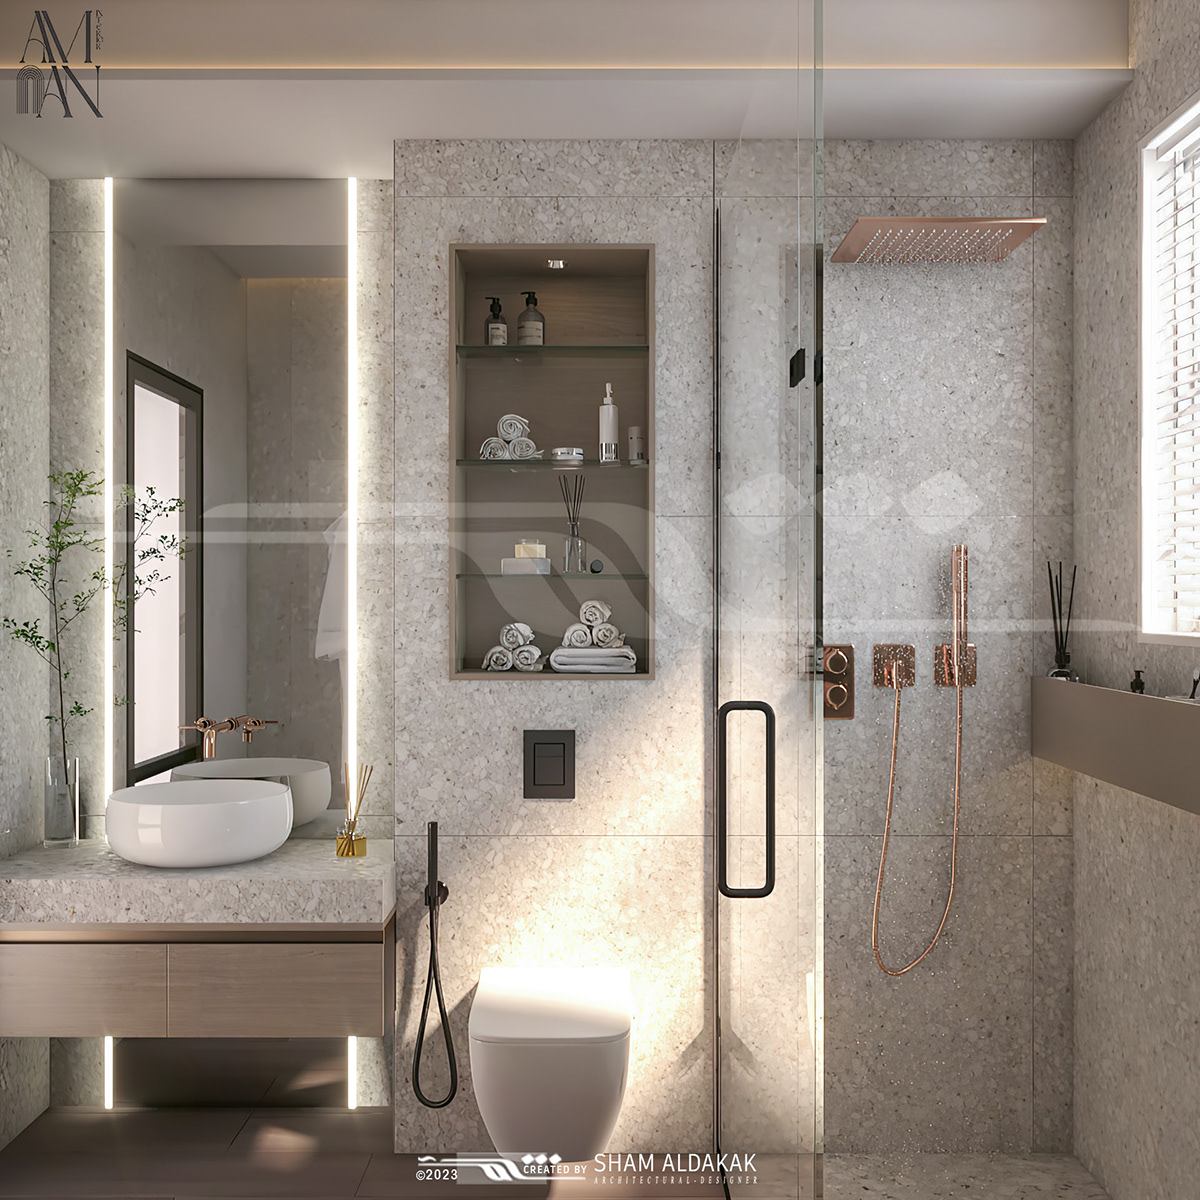 bathtub SHOWER bathroom interior design  architecture Render visualization modern Sham Aldakak bathroom design